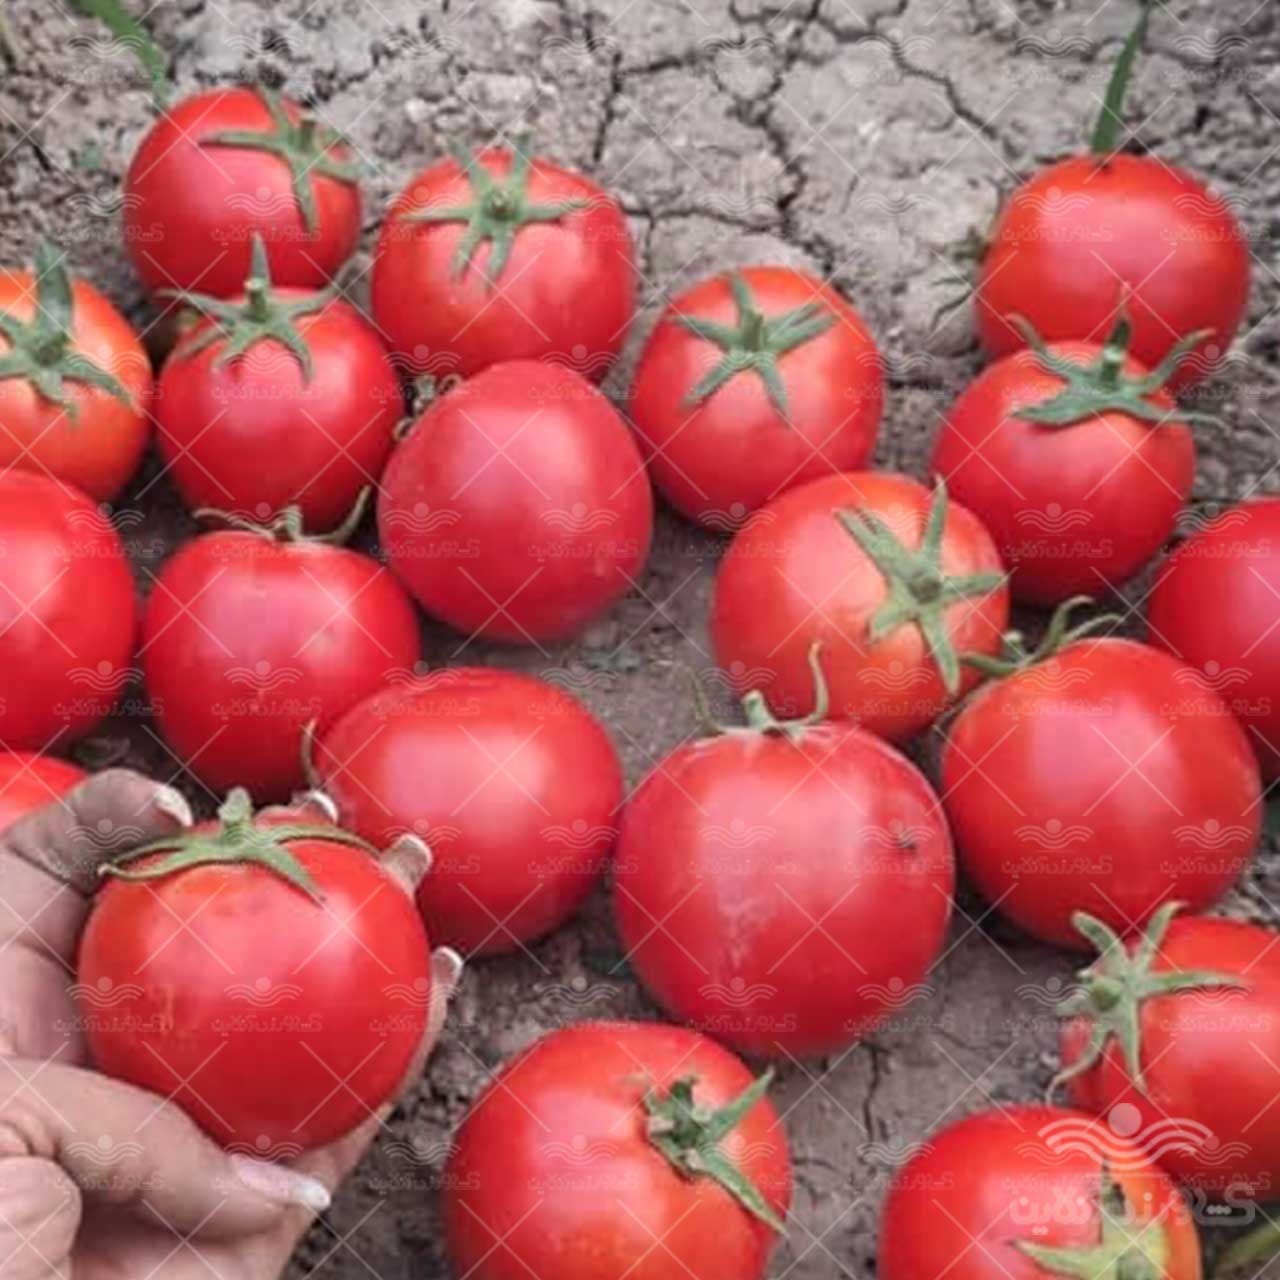 بذر گوجه فرنگی یارا از شرکت سن مارتین آمریکا مشابه بدرو فلات 5000 عددی 3